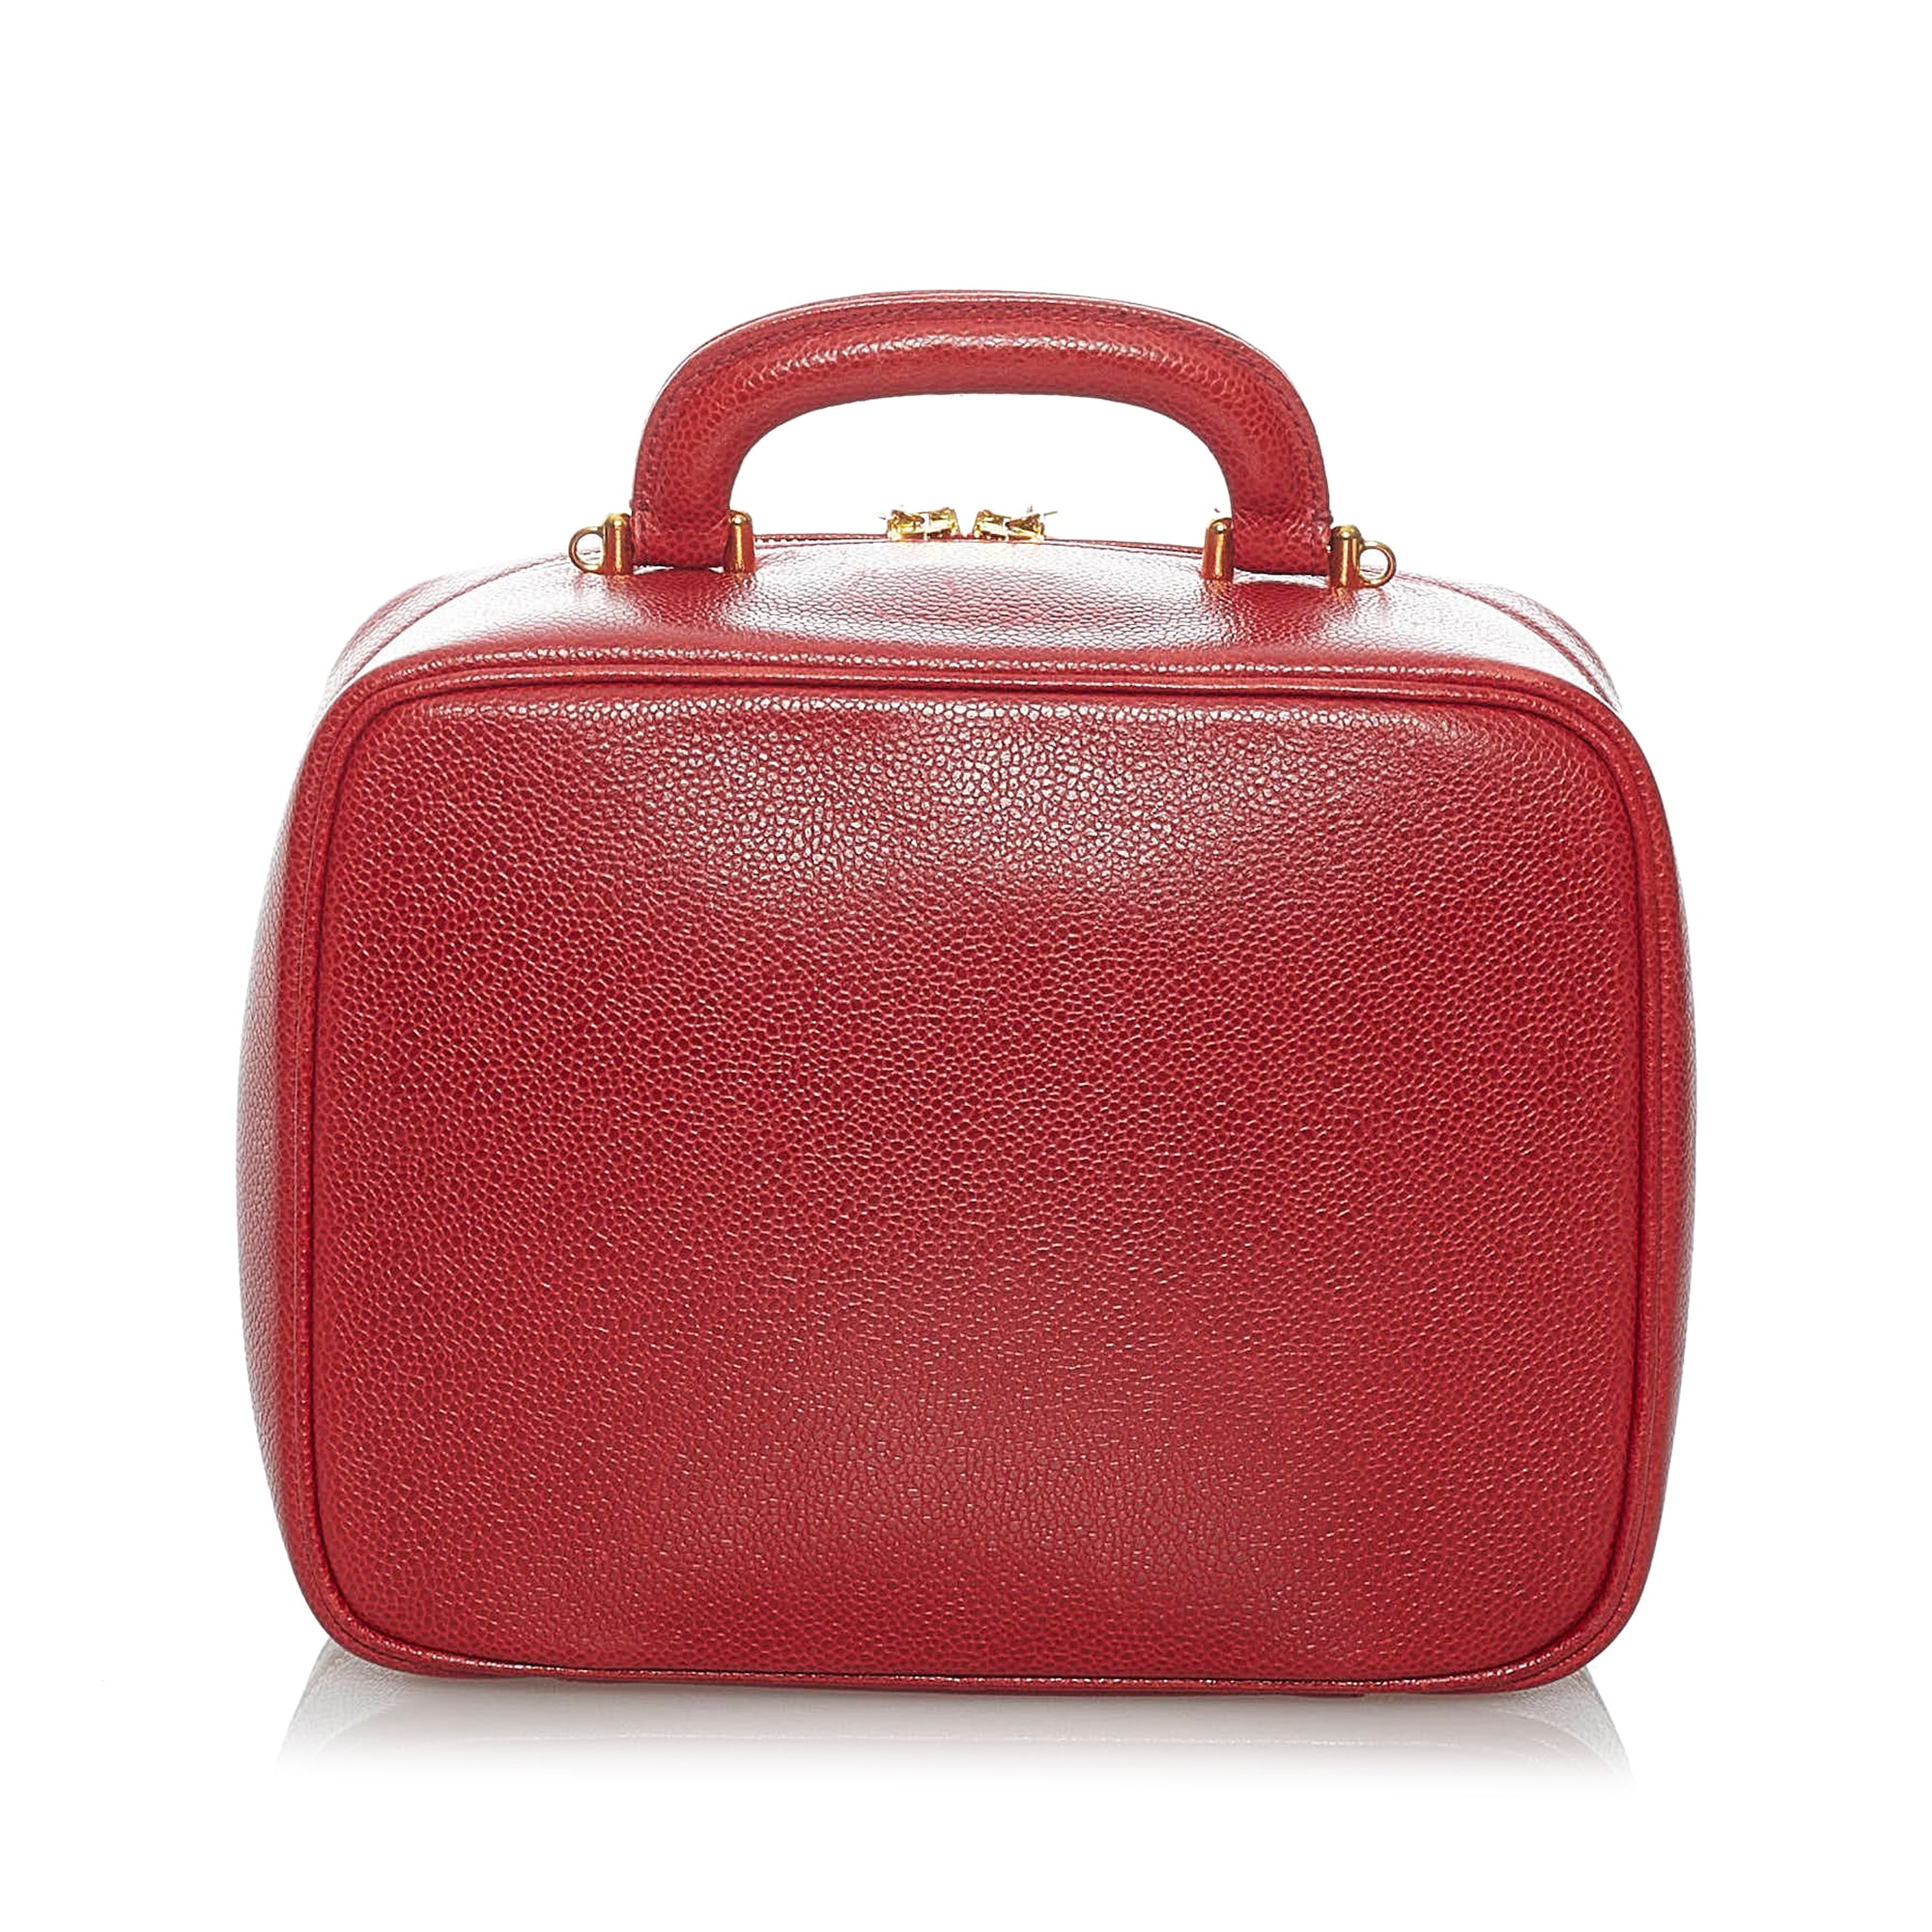 Red images Chanel Caviar CC Lunch Box Vanity Case Bag, Sac bandoulière  images Chanel Boy en cuir matelassé rouge